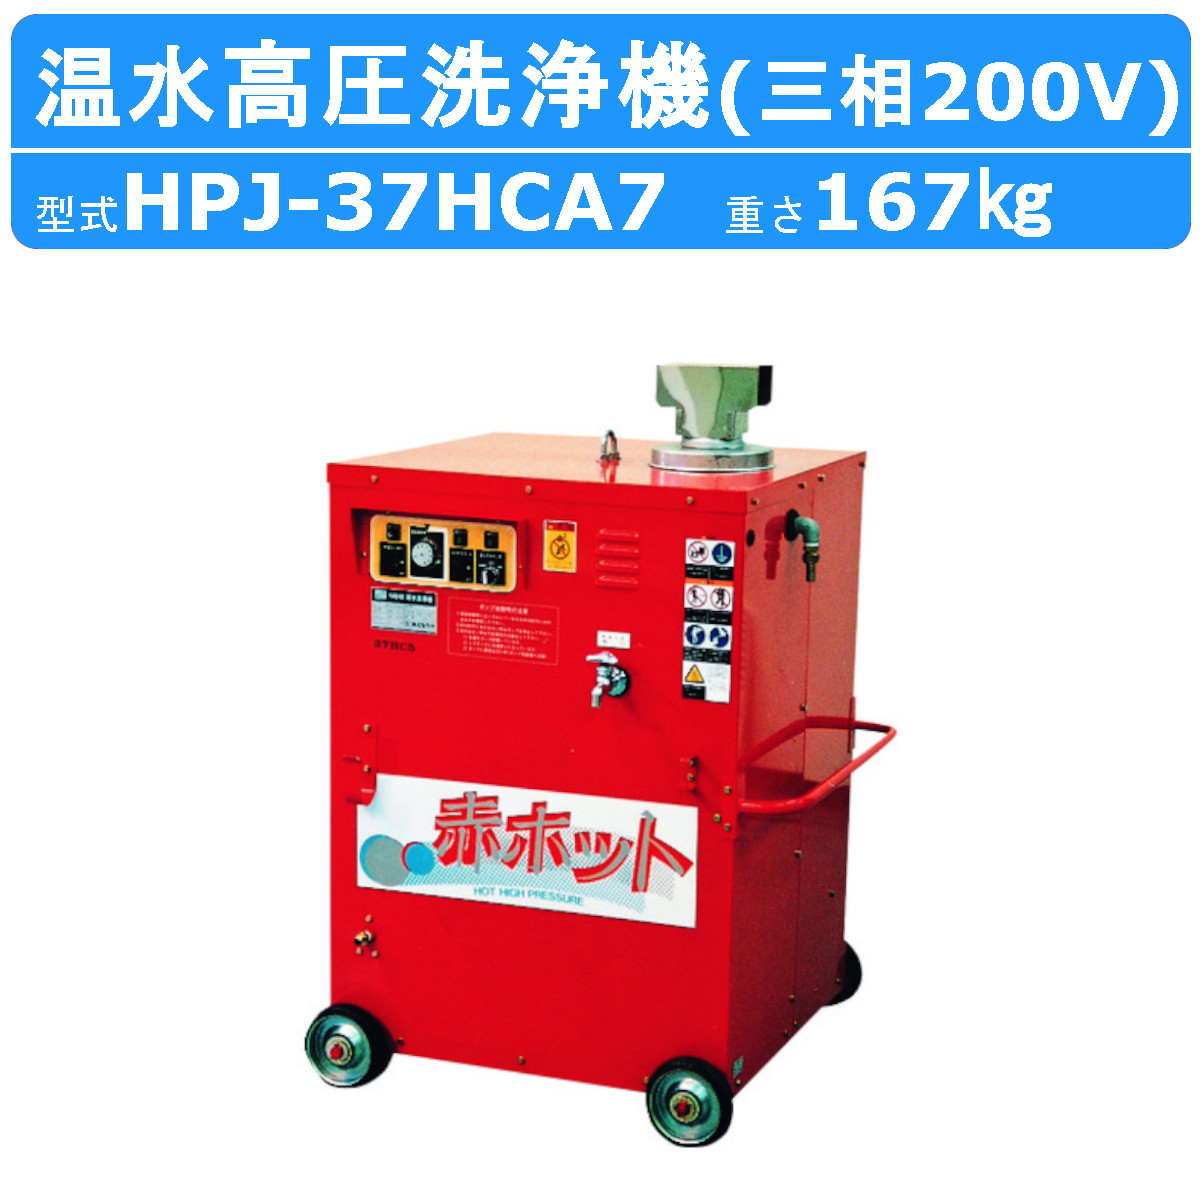 ツルミ 温水高圧洗浄機 HPJ-37HCA7 三相200V 温水タイプ ノズル・吐水